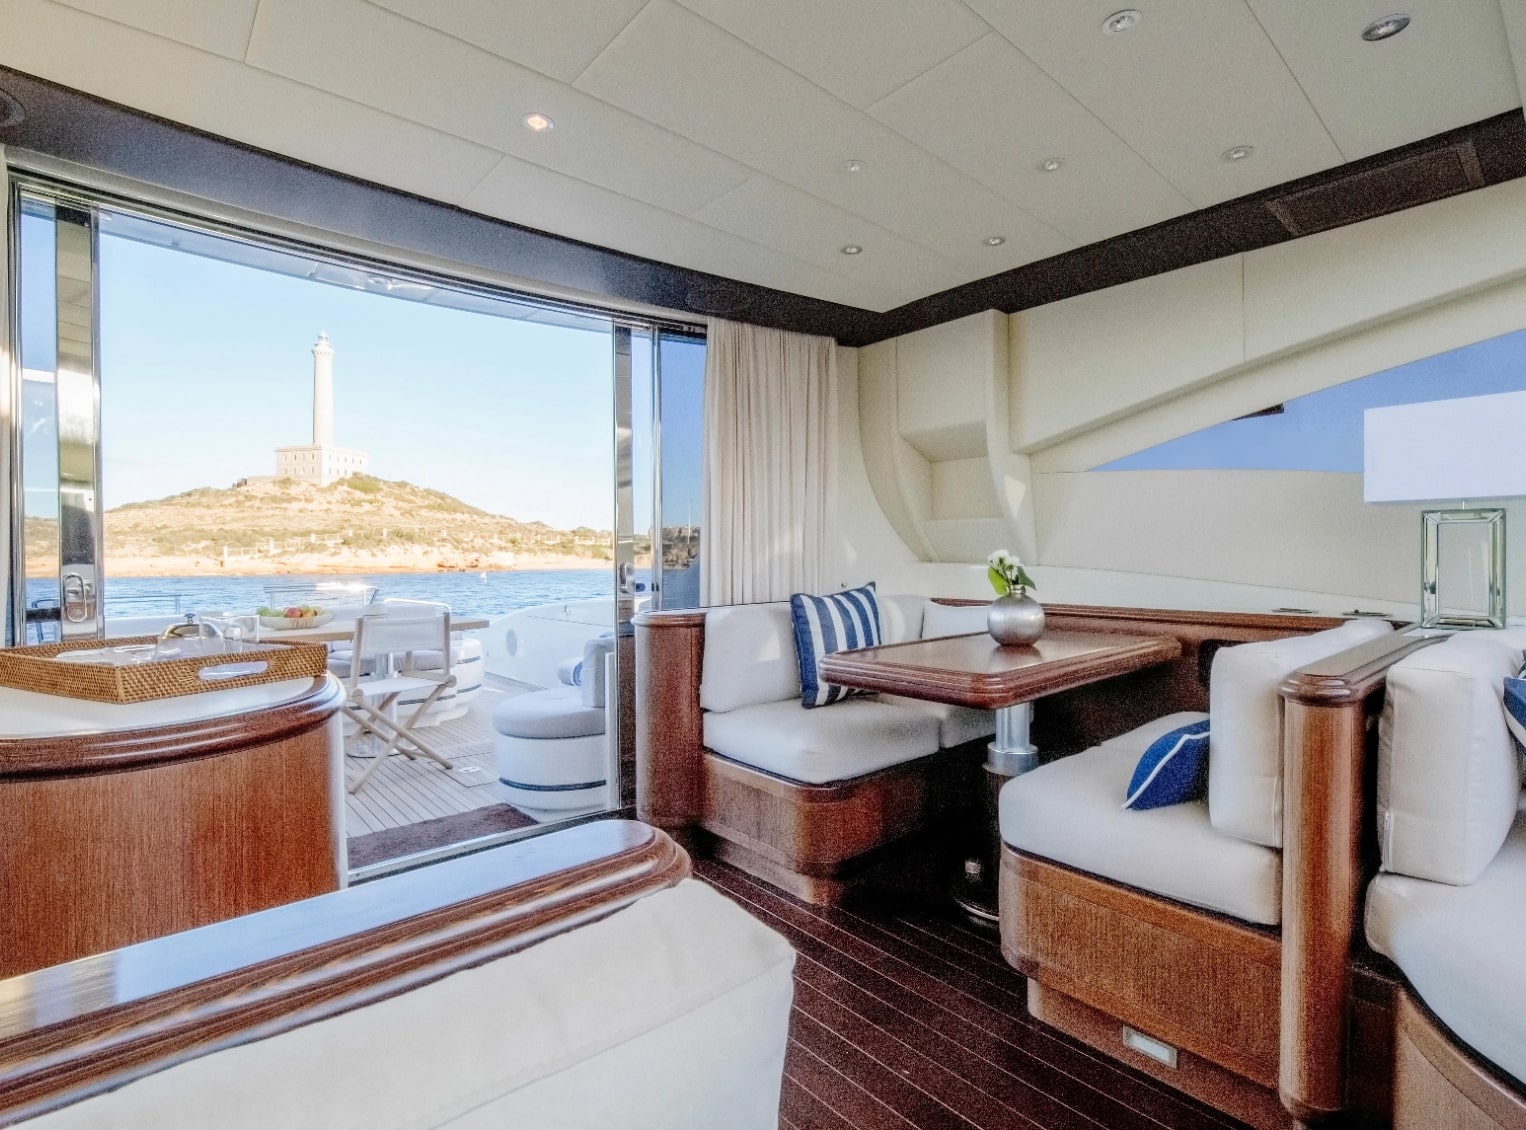  Alquiler y Gestión de yates en Ibiza - Dama Yachts | Yacht rental and management in Ibiza - Dama Yachts